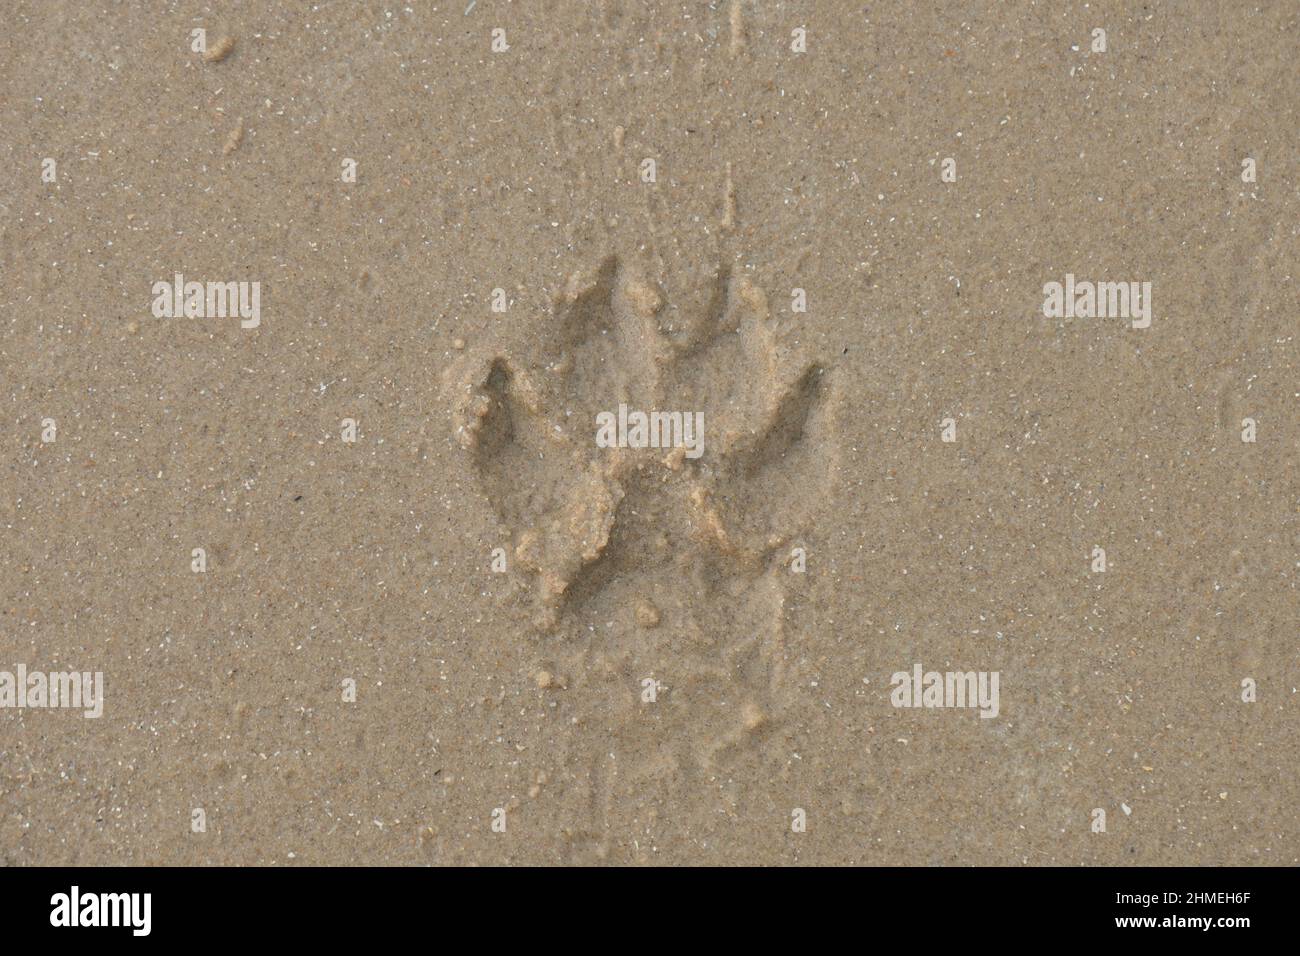 Ein Druck einer Hundepfote am gelben Sandstrand. Aus nächster Nähe gesehen. Stockfoto